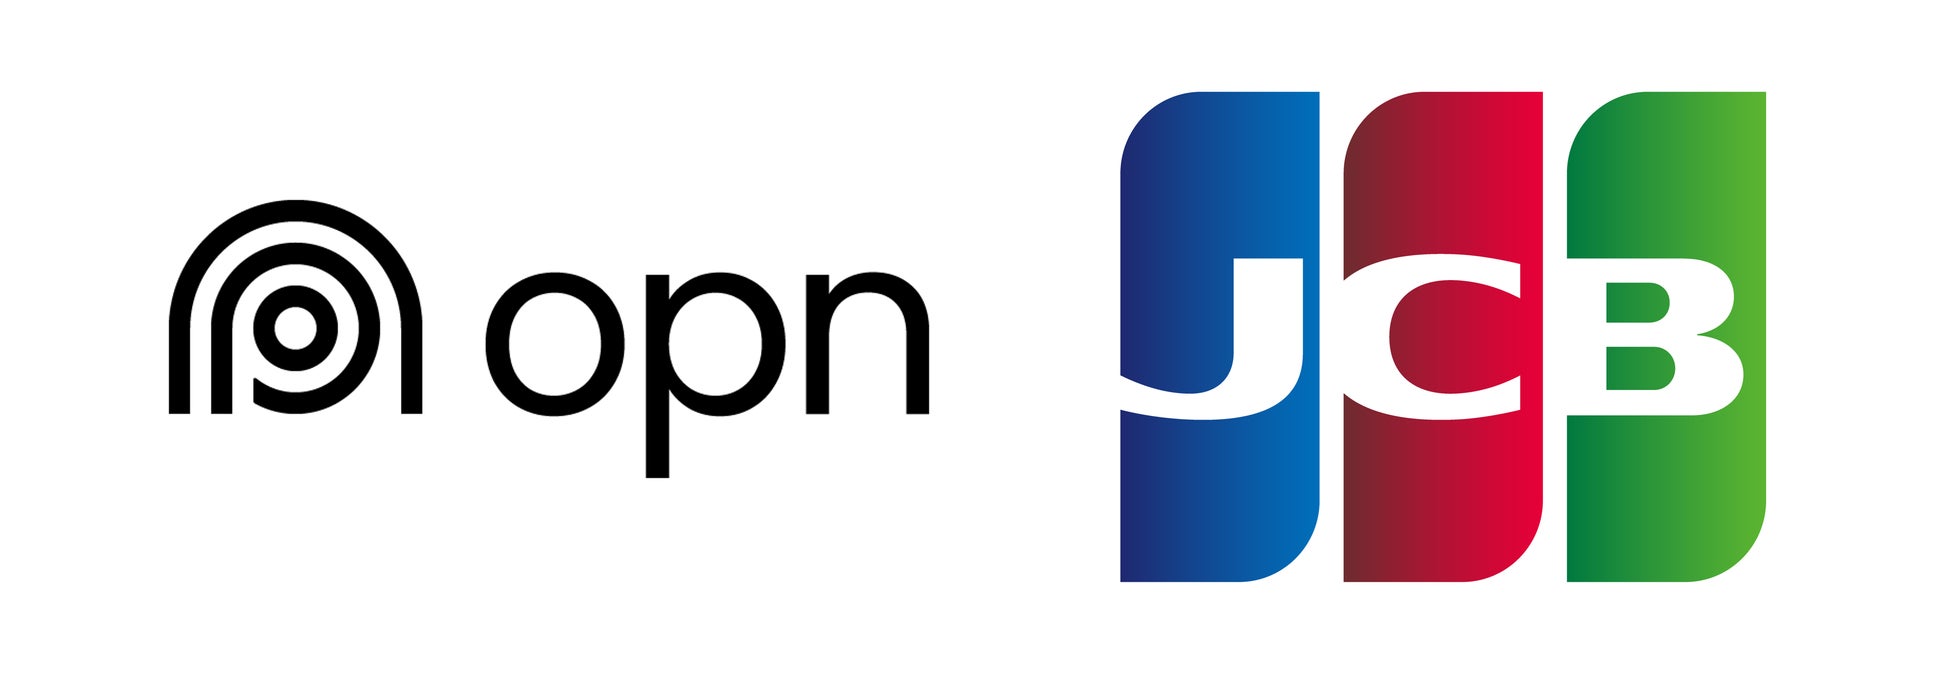 Opn、JCBと提携し、タイ国内におけるアクワイアリングとプロセシング業務をサービスに追加